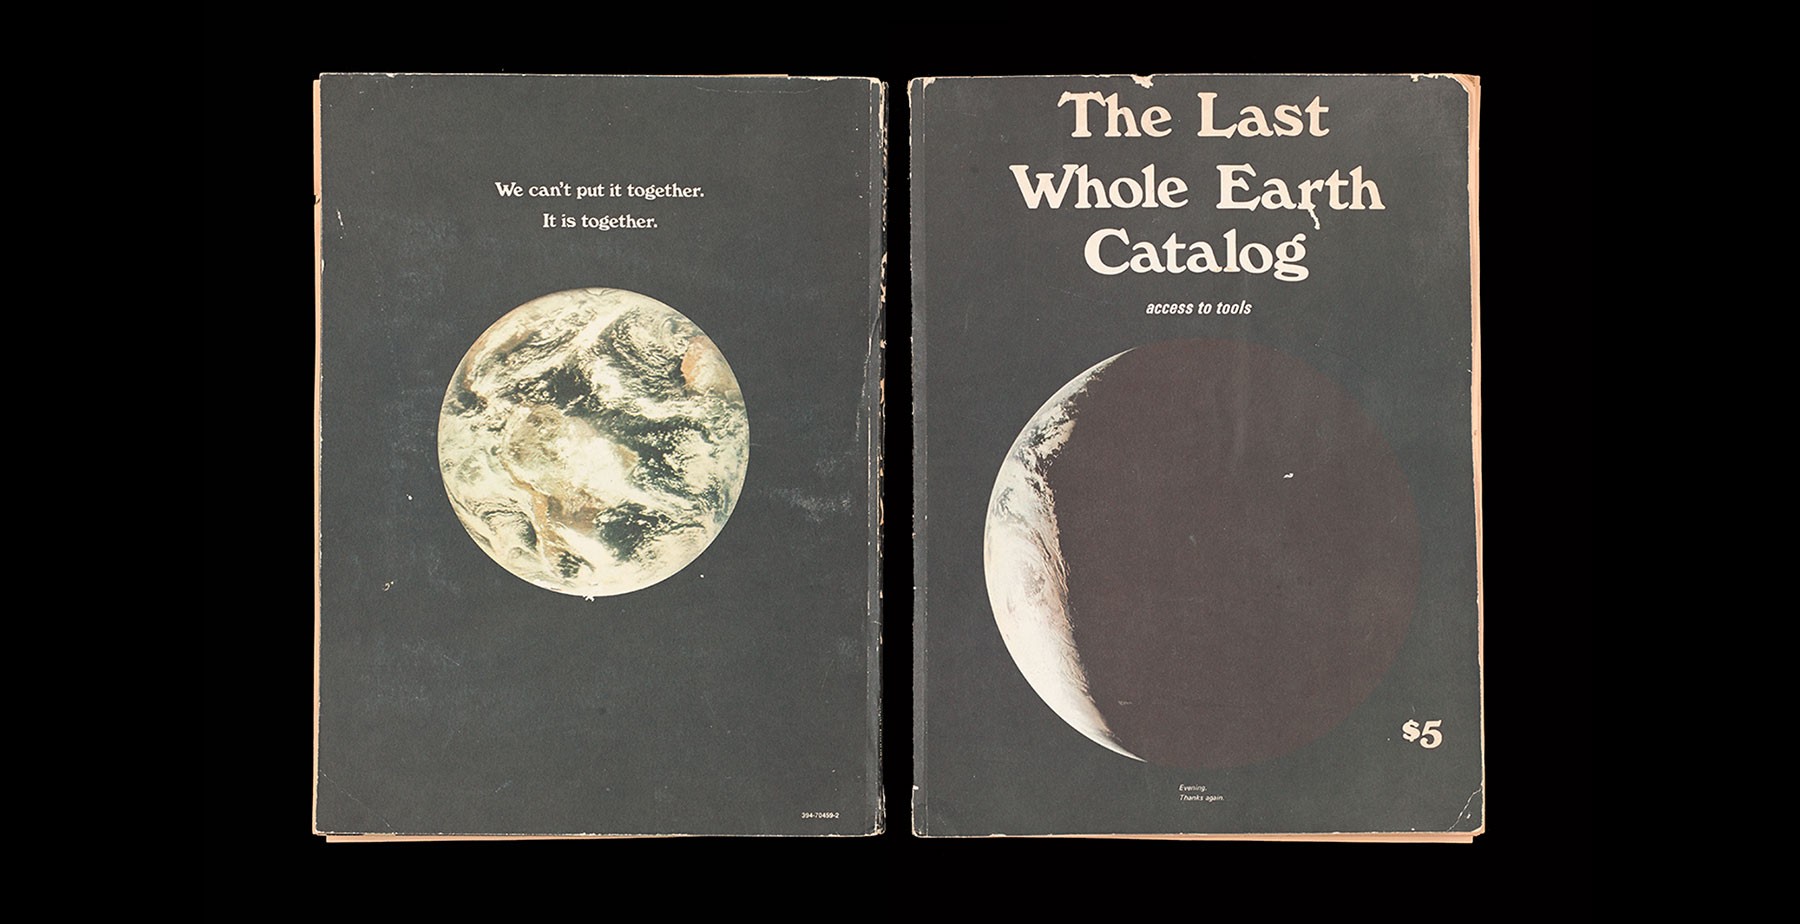 The Last Whole Earth Catalog 1971